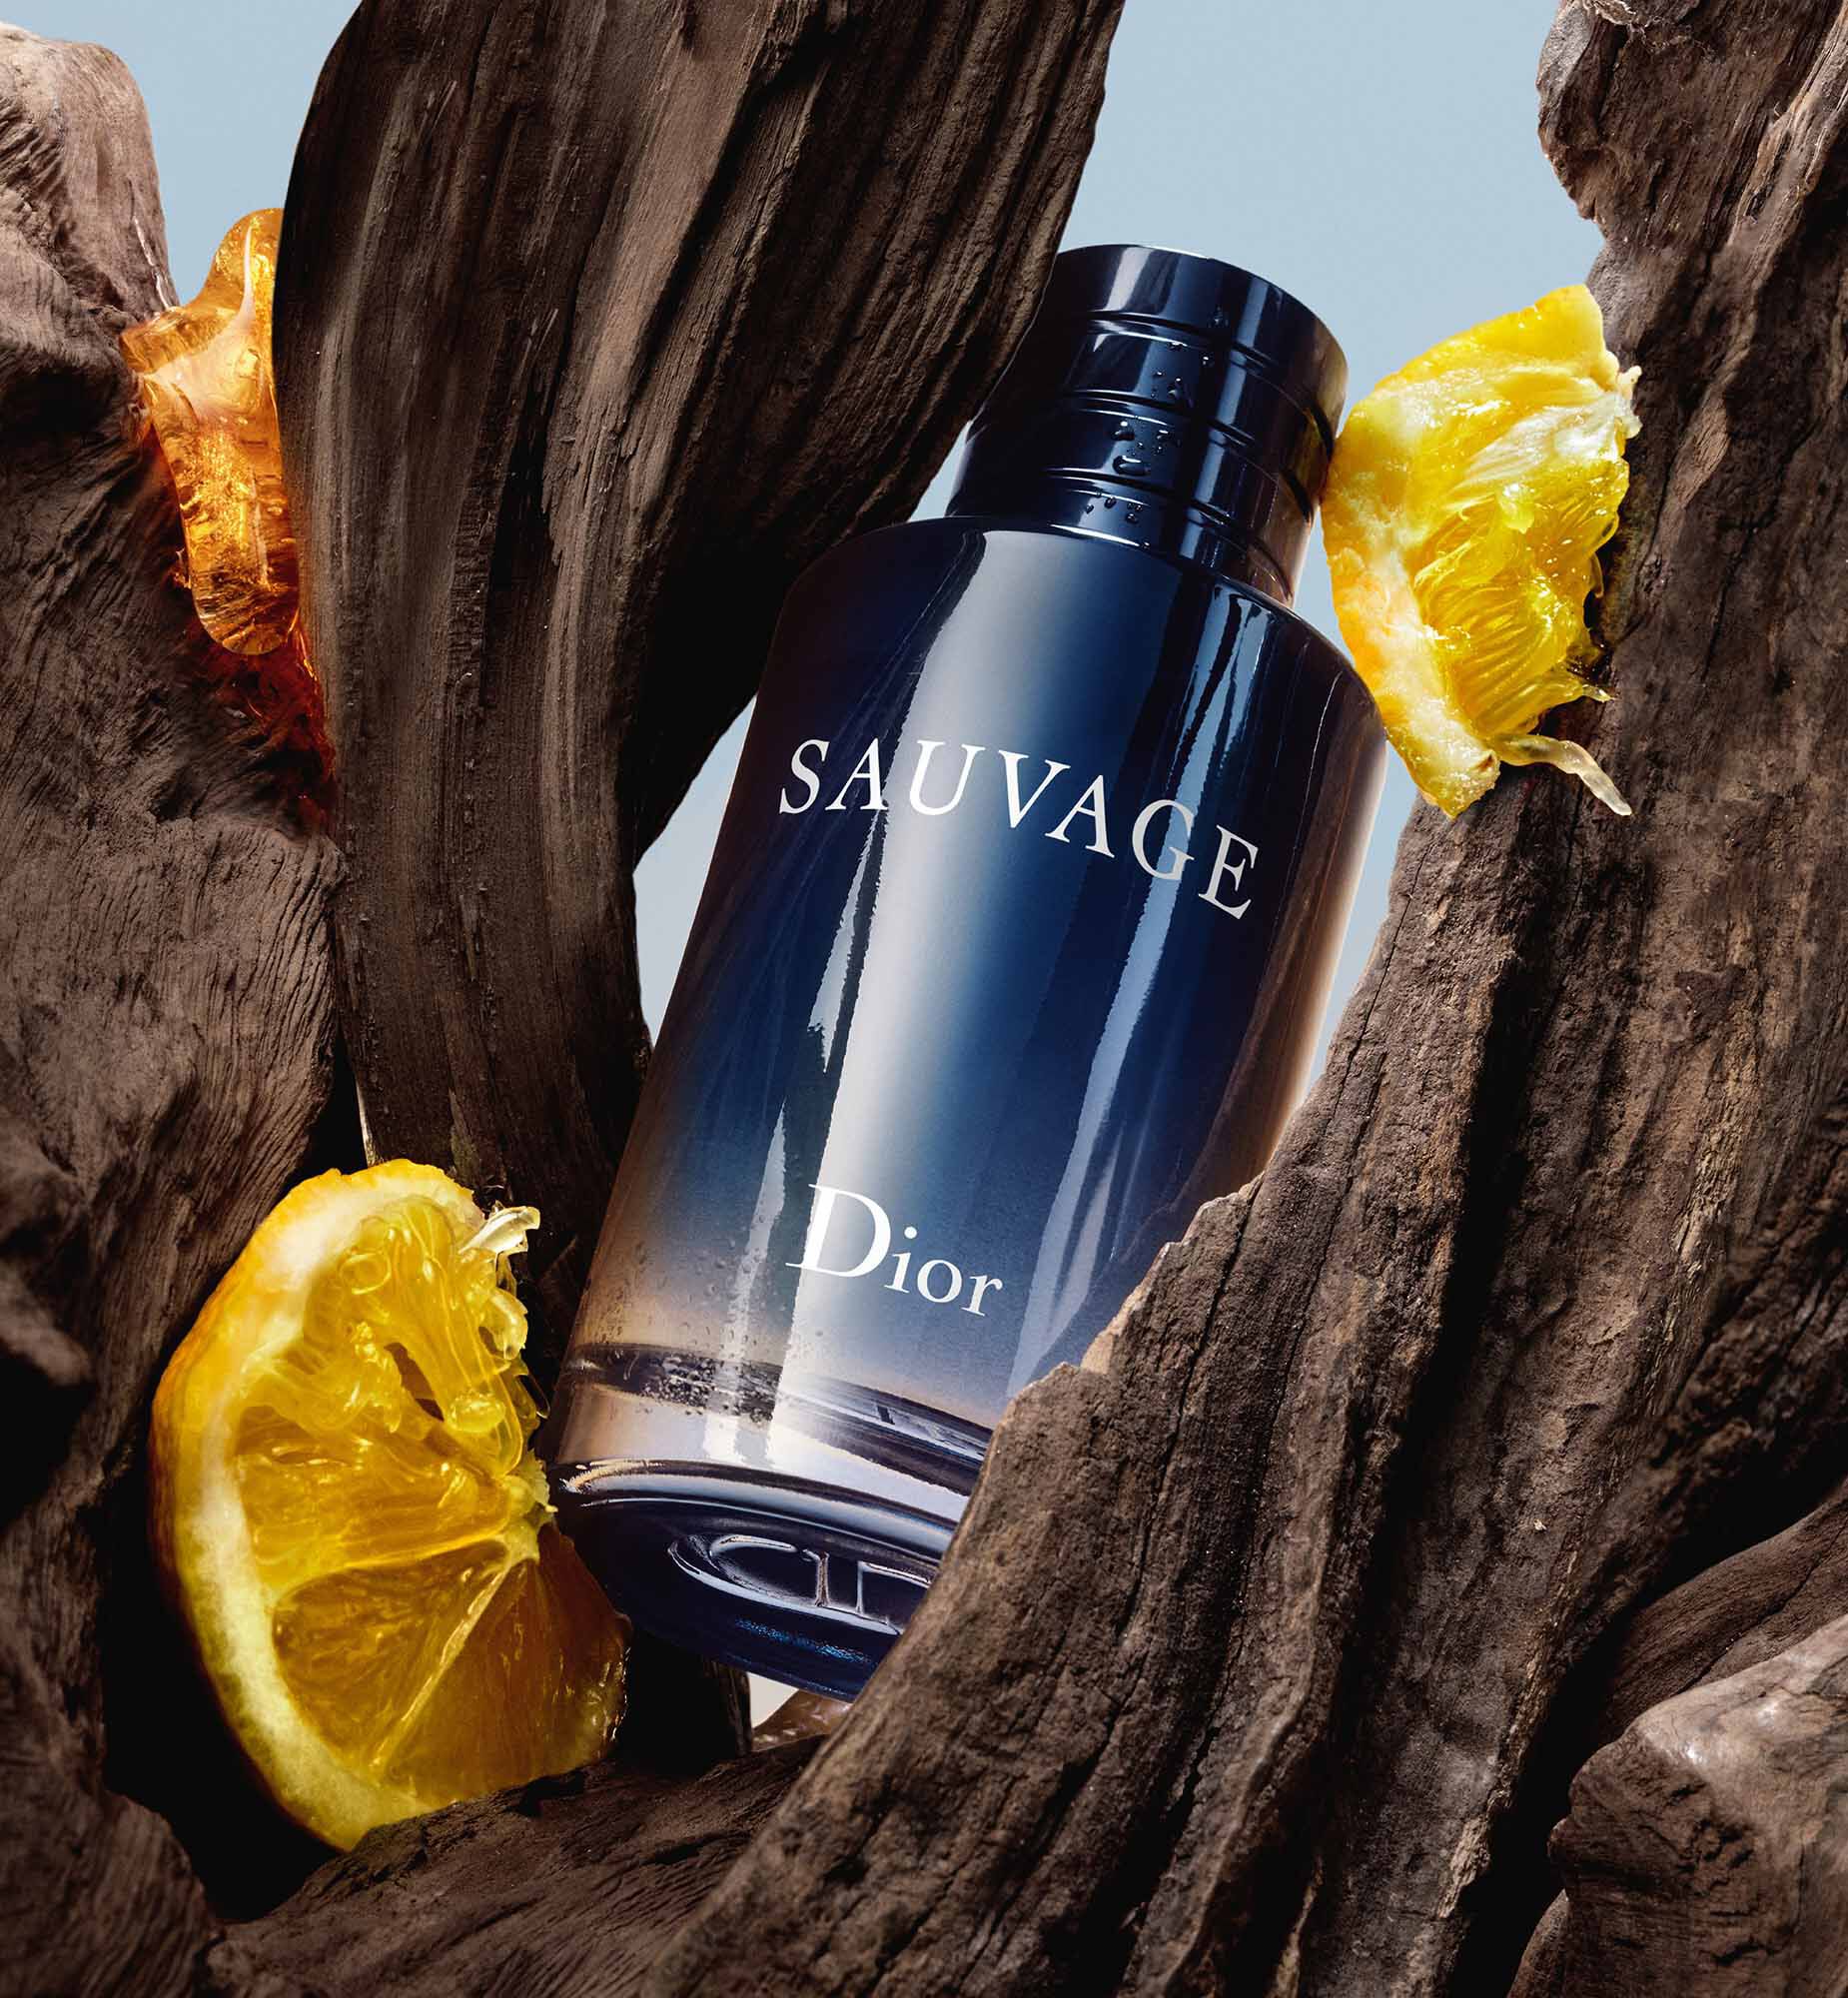 Christian Dior Sauvage 2015  купить в Москве мужские духи туалетная вода  Диор Саваж по лучшей цене в интернетмагазине Randewoo